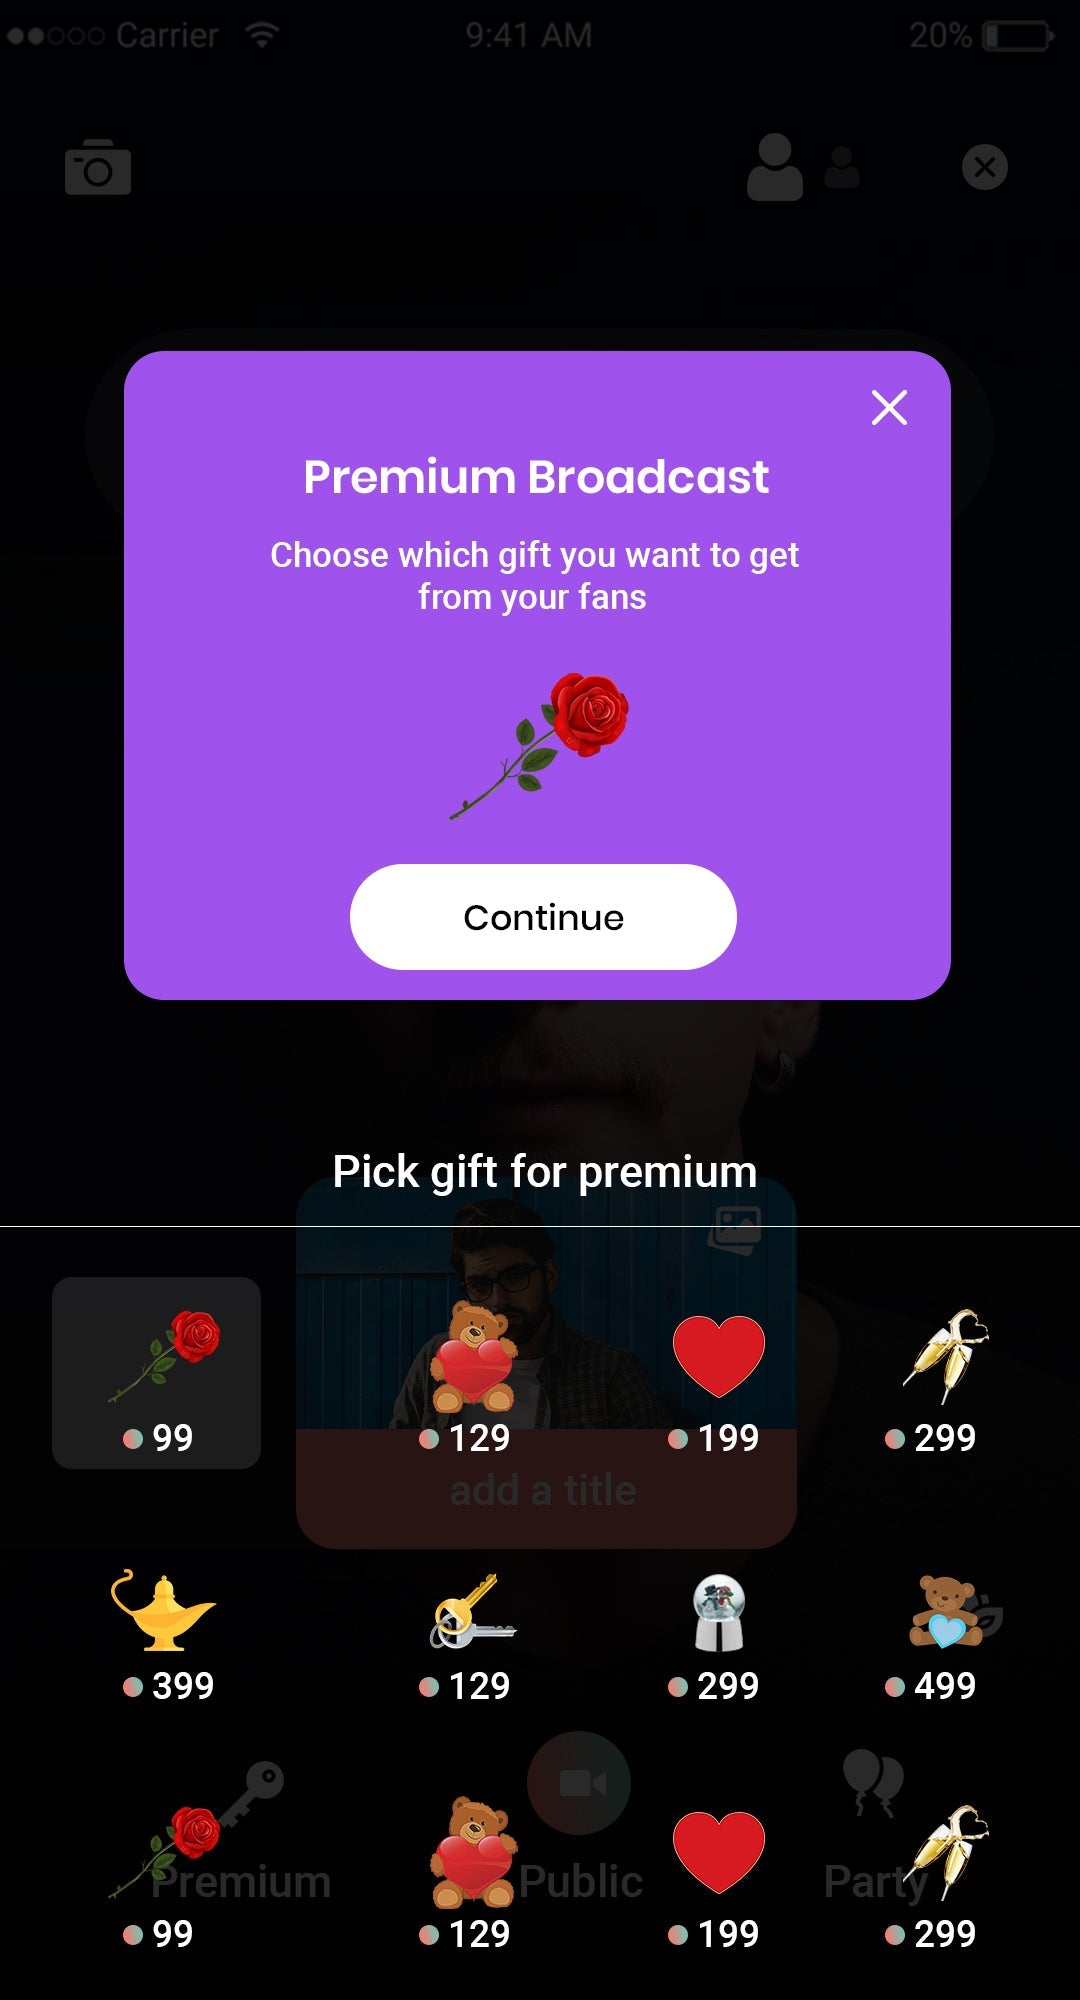 Premium Broadcast